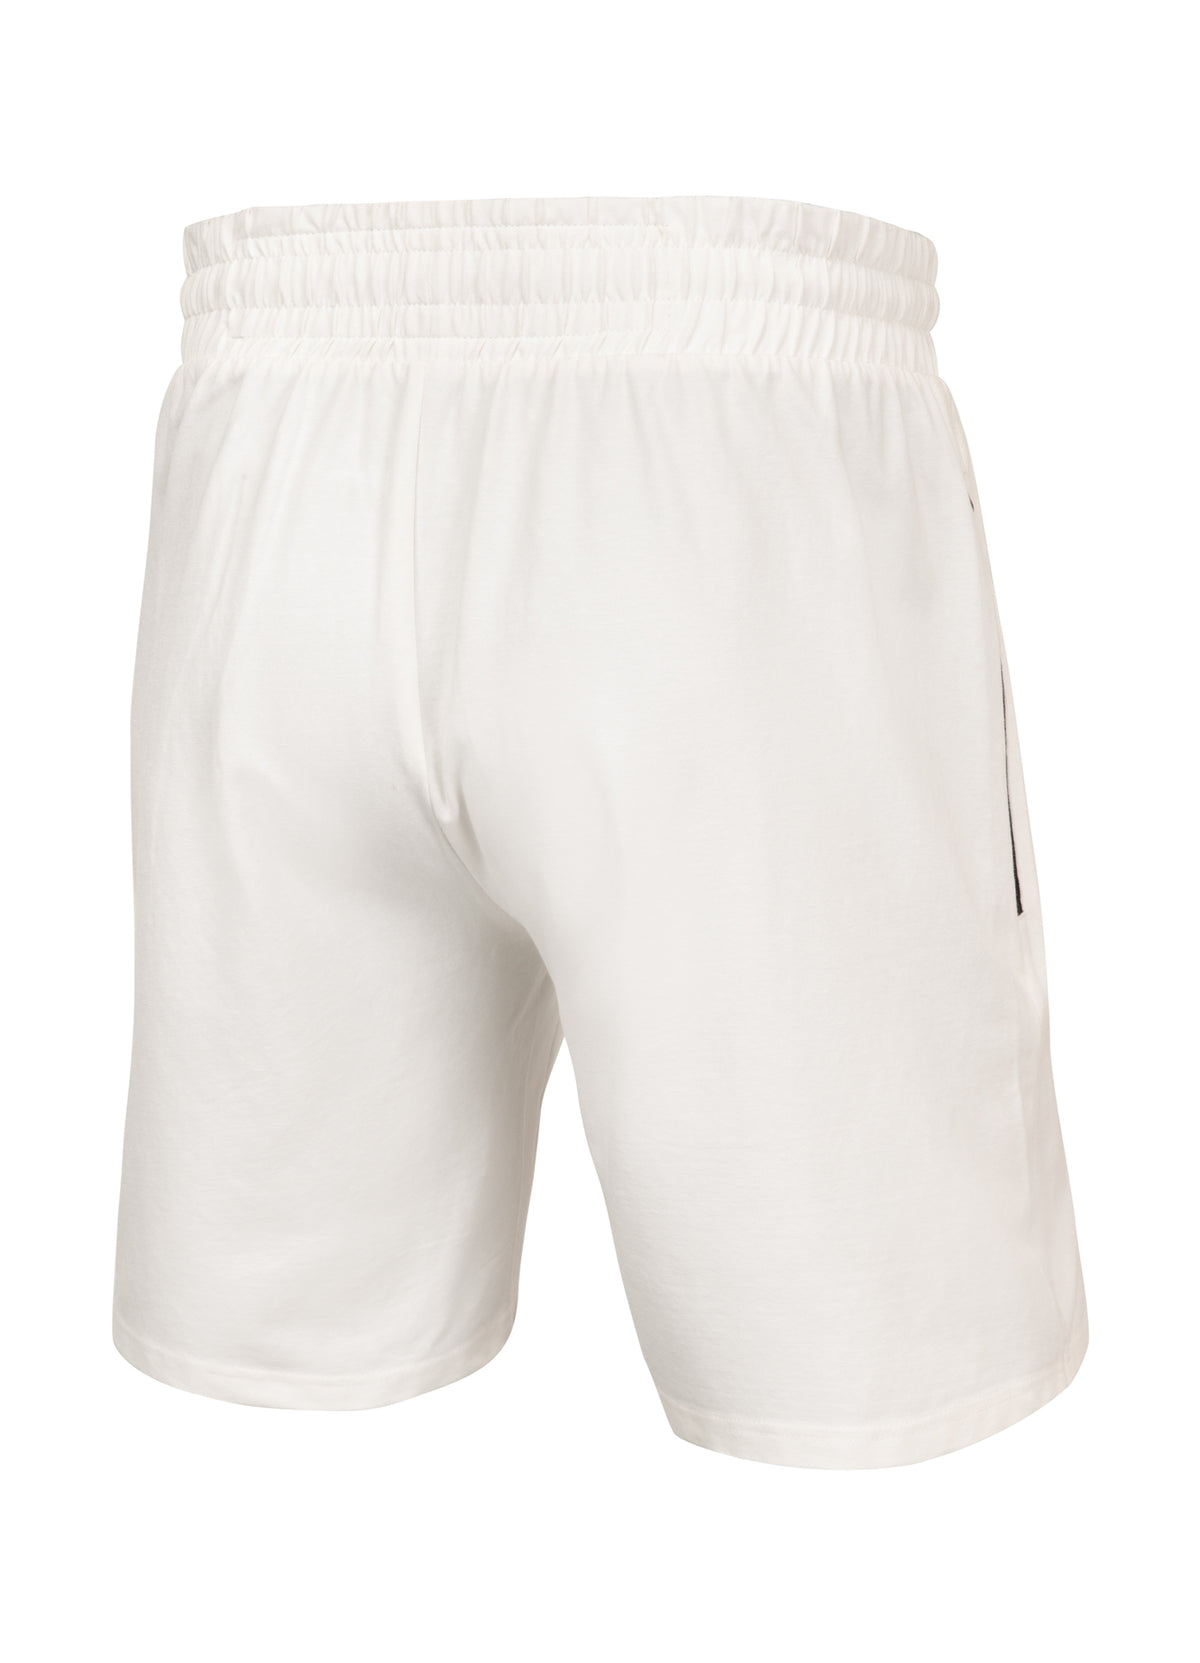 TARENTO 210 Off White Shorts - Pitbullstore.eu